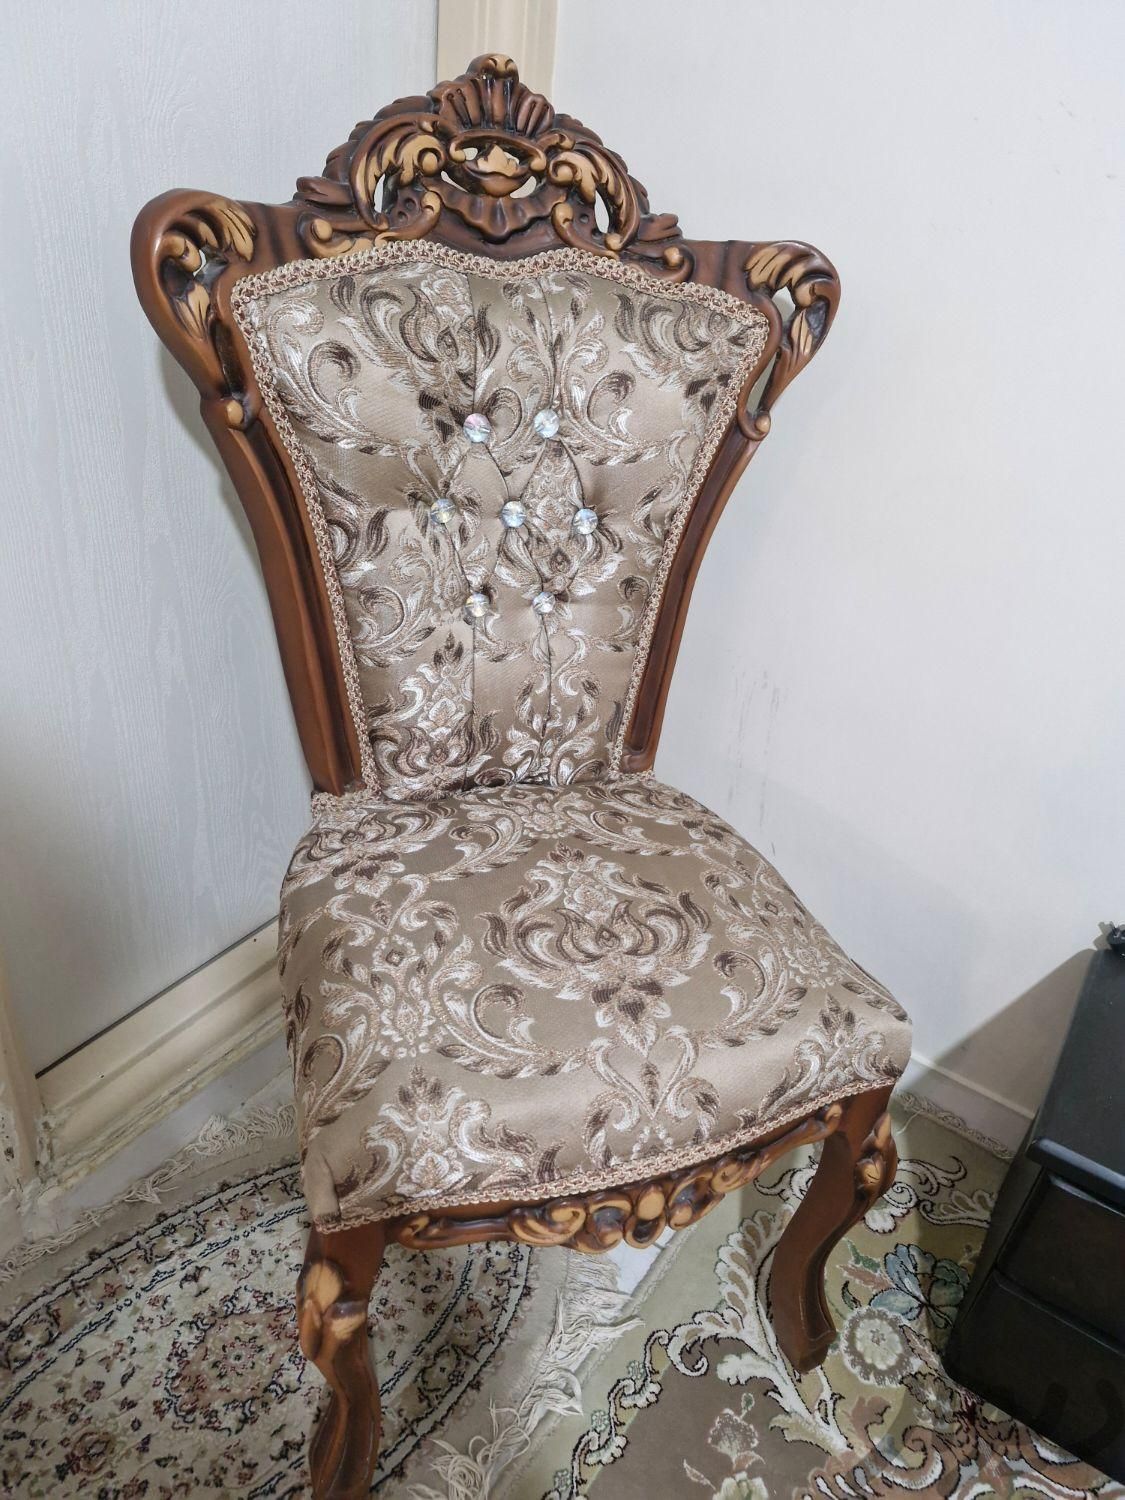 دو عدد صندلی میزبان|مبلمان خانگی و میزعسلی|تهران, امیر بهادر|دیوار